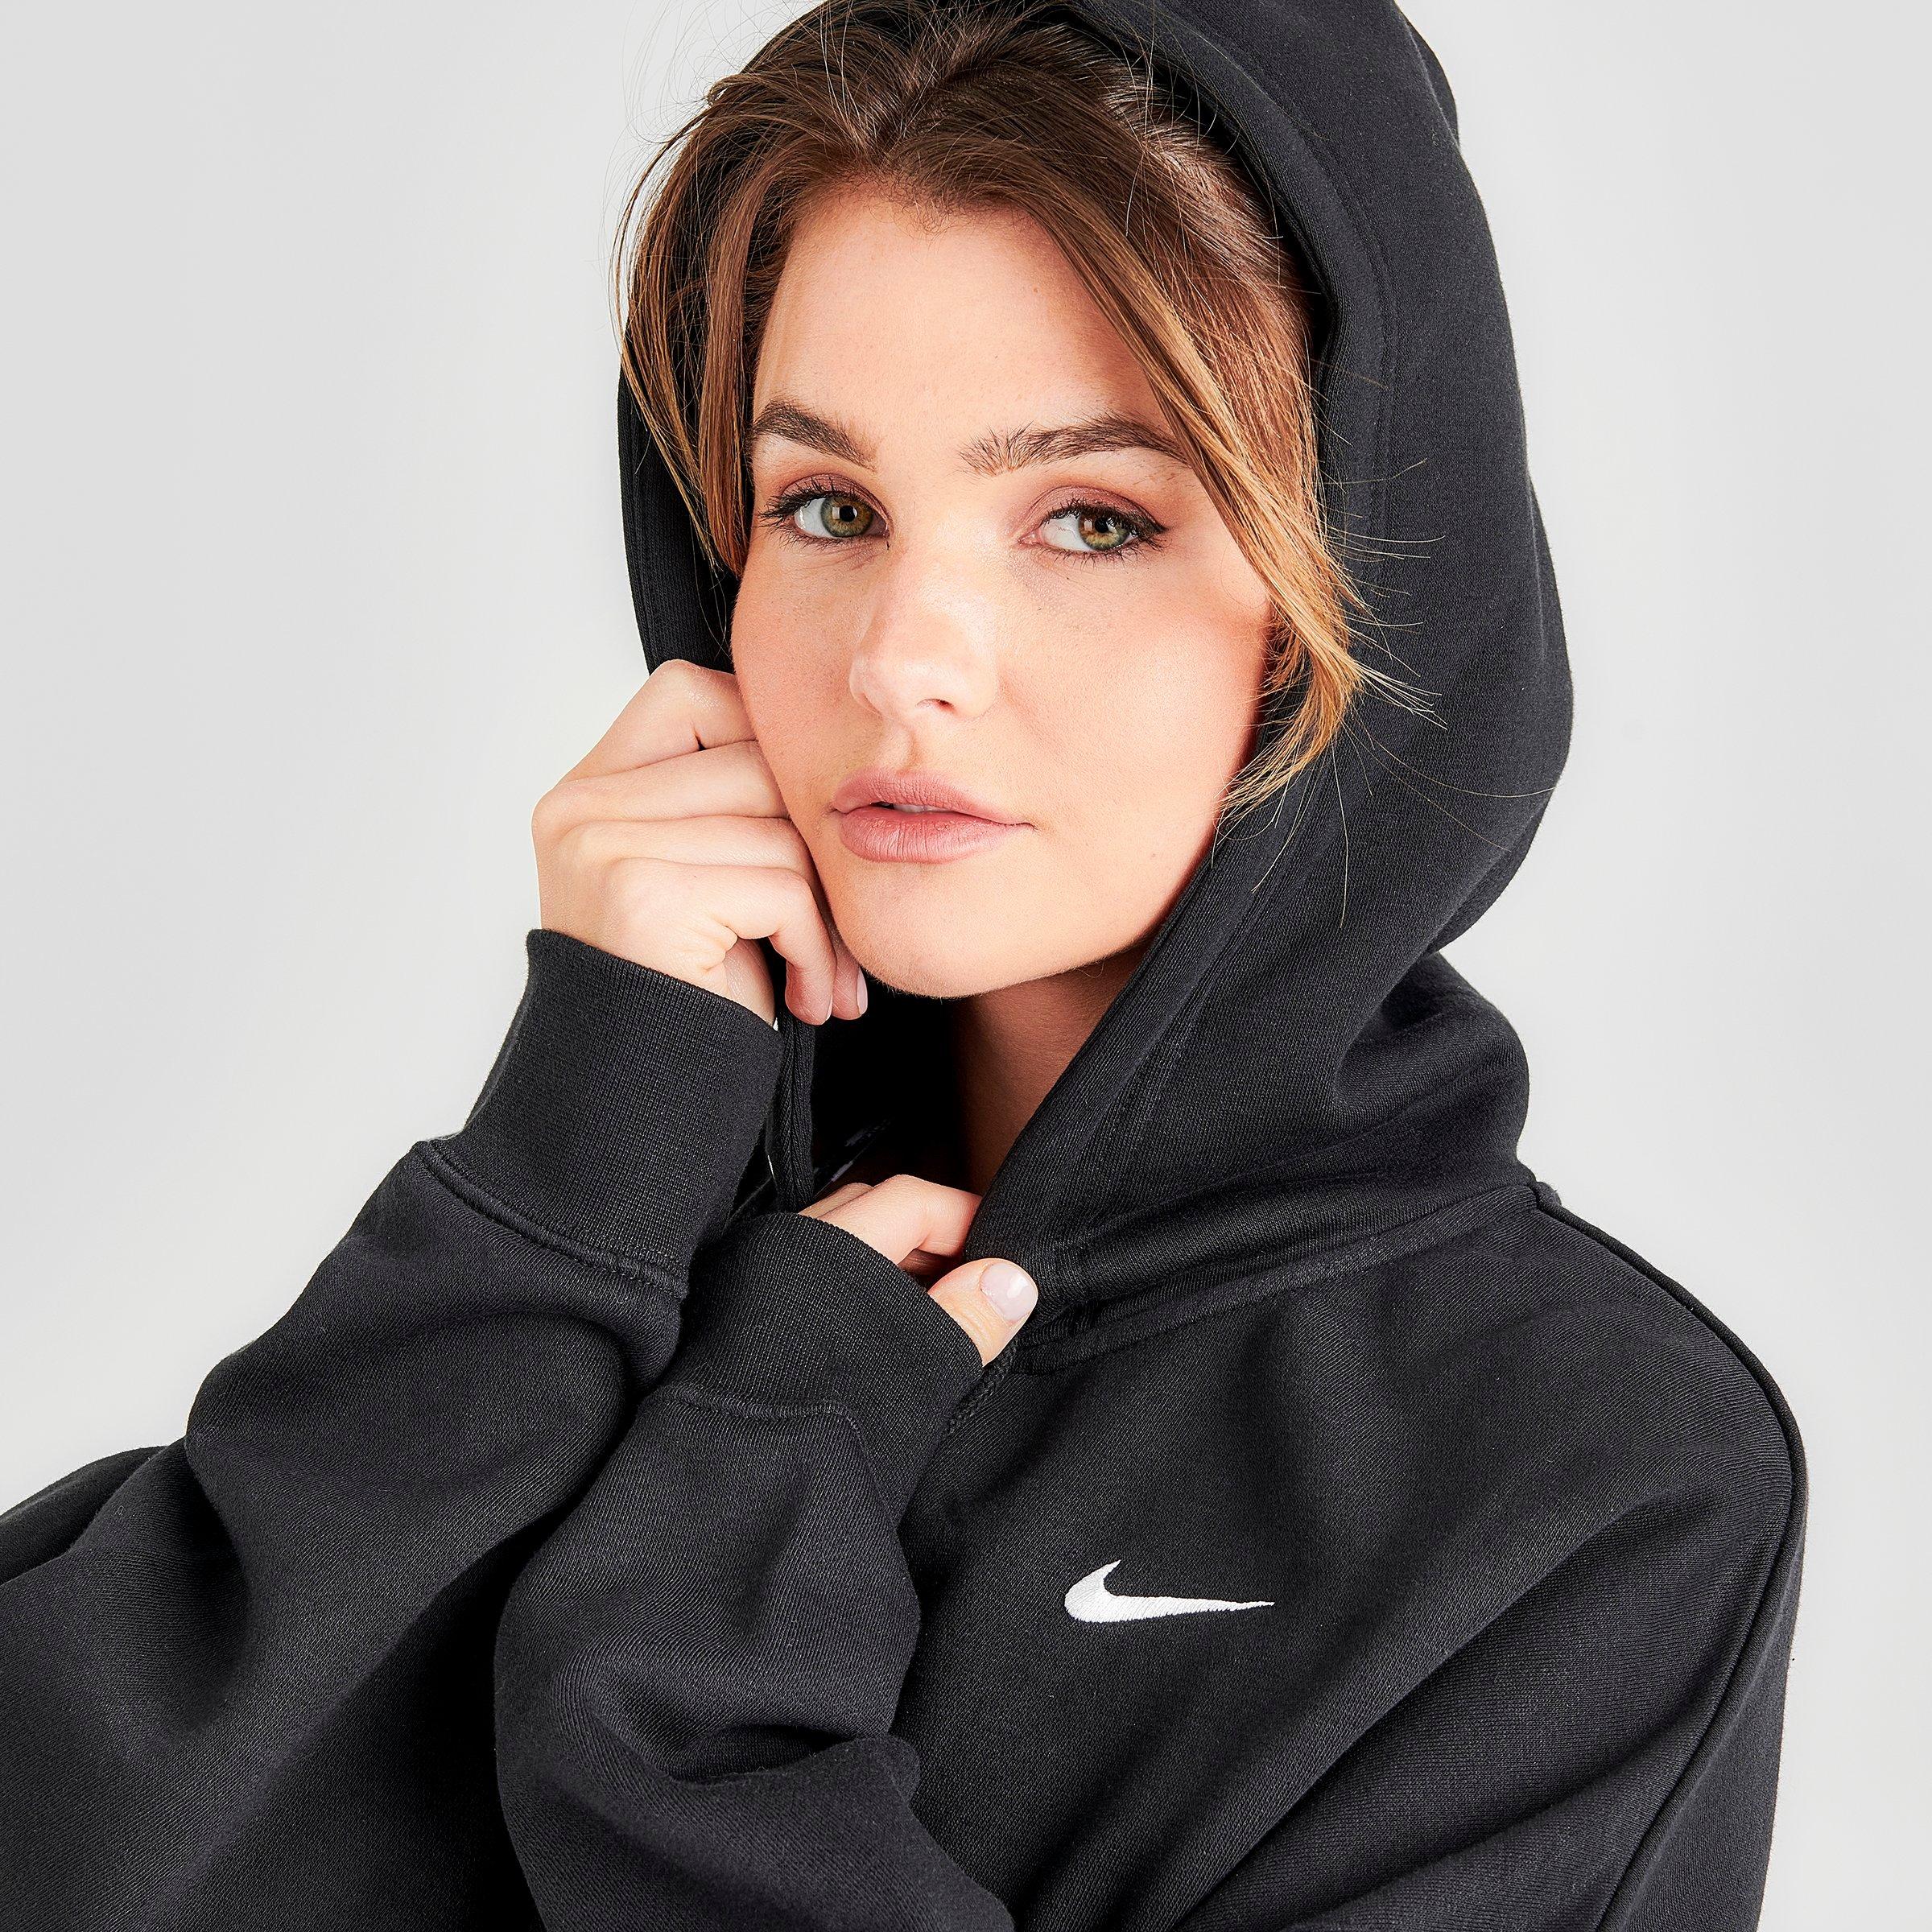 nike women's sportswear essential fleece zip hoodie